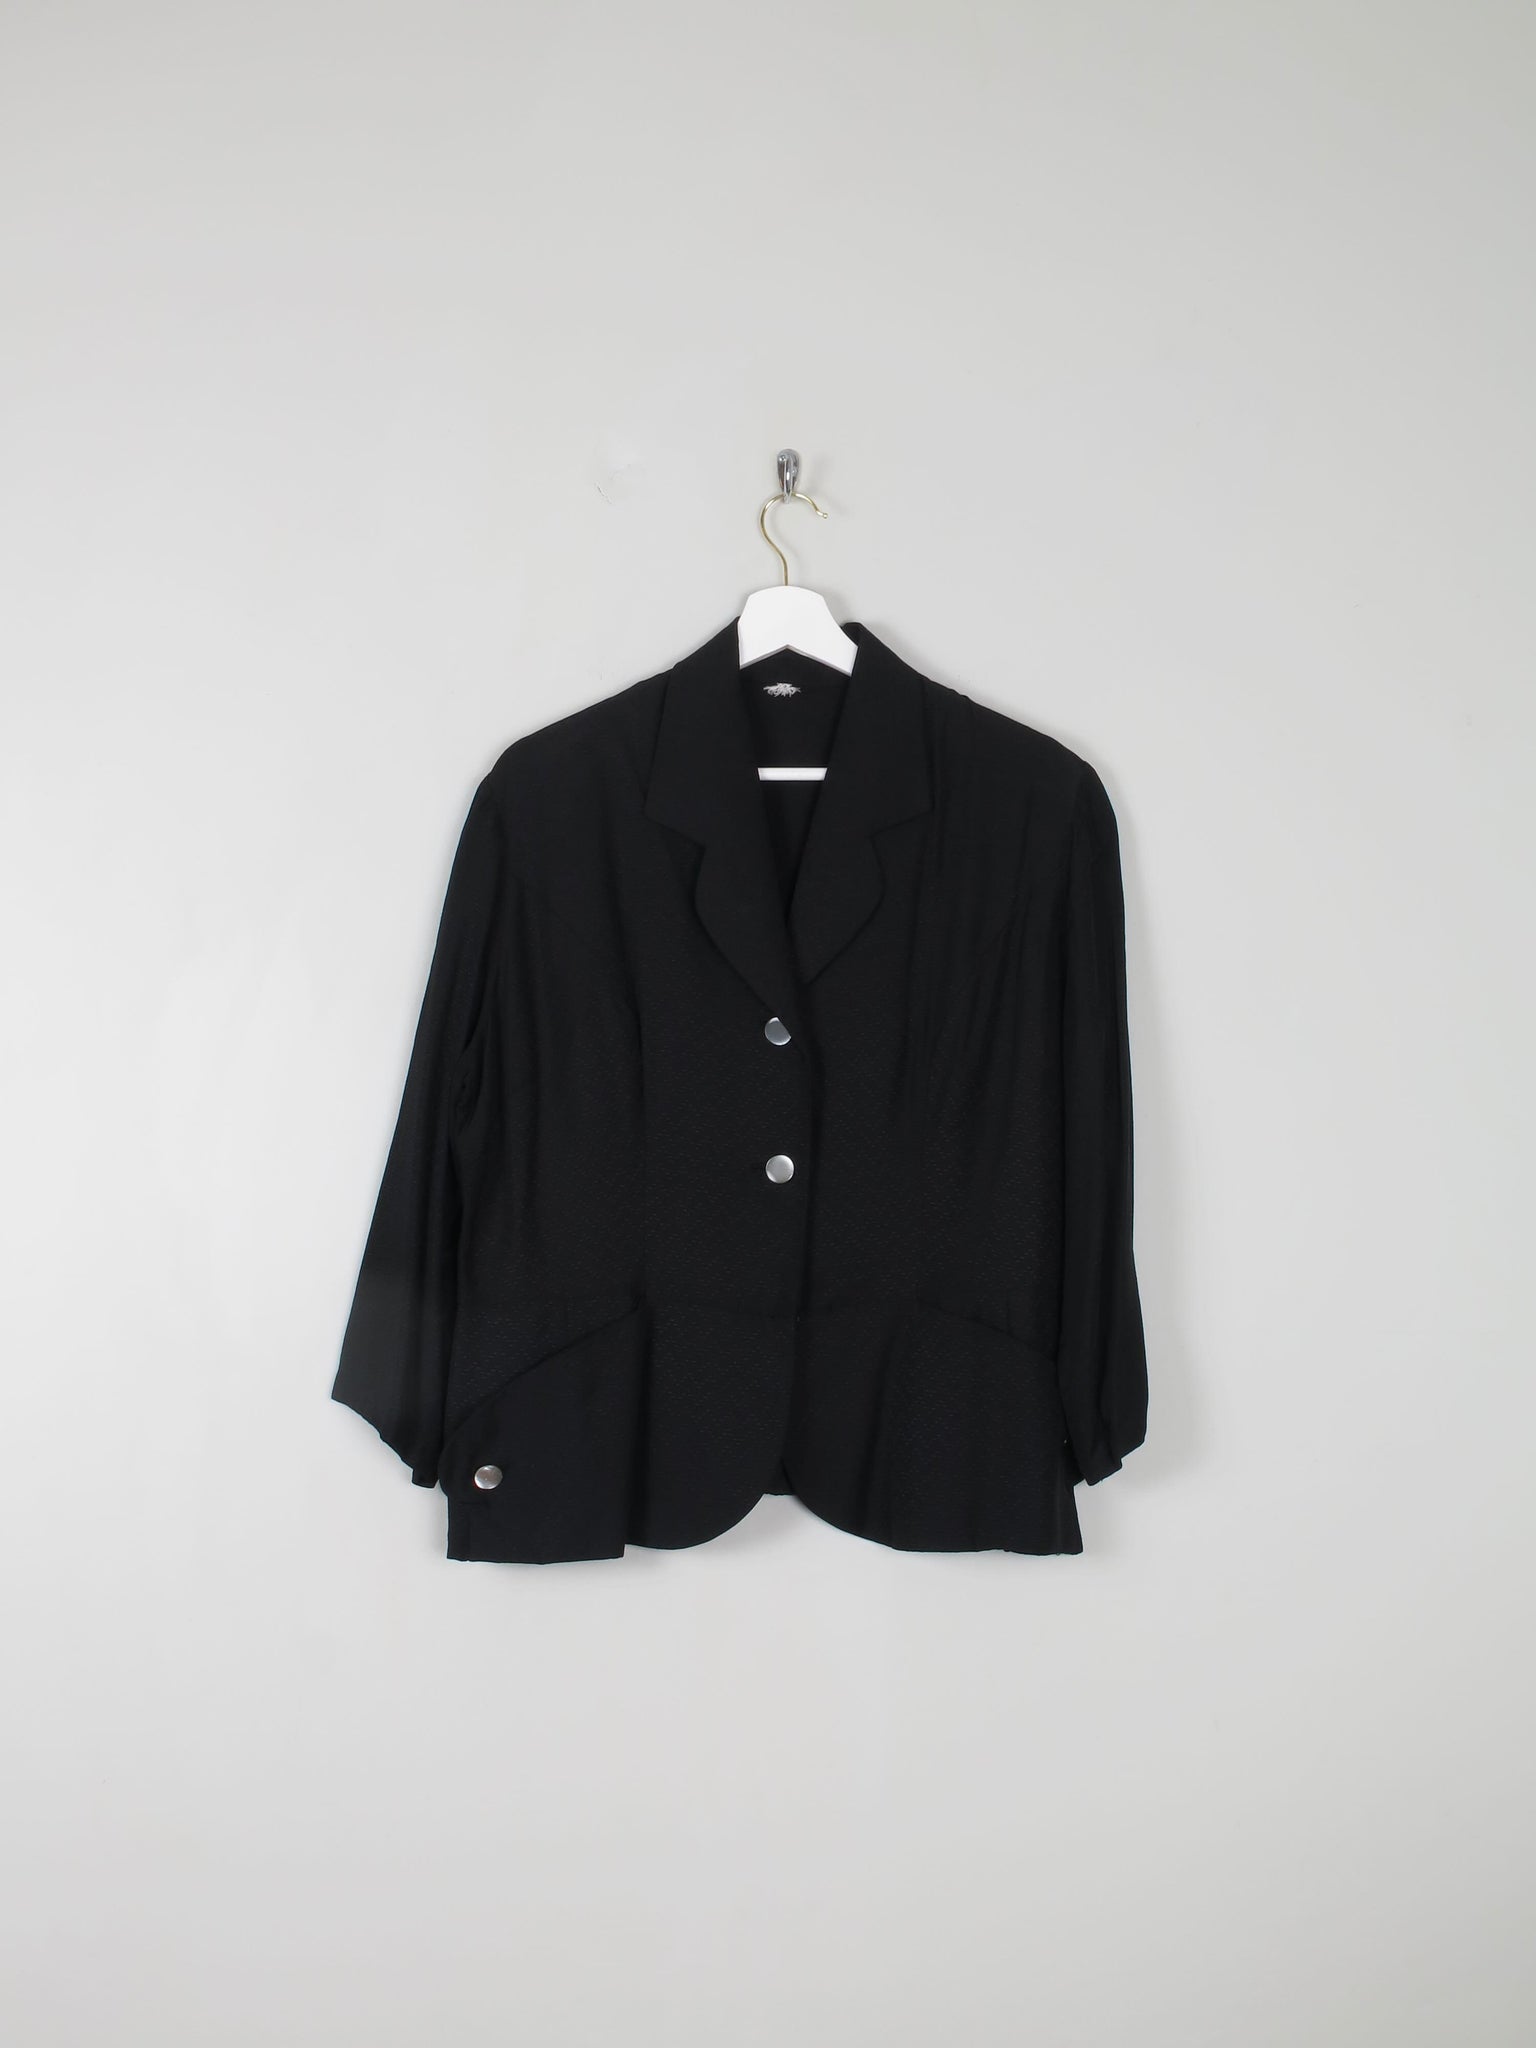 Women's Vintage Black Jacket 14 - The Harlequin